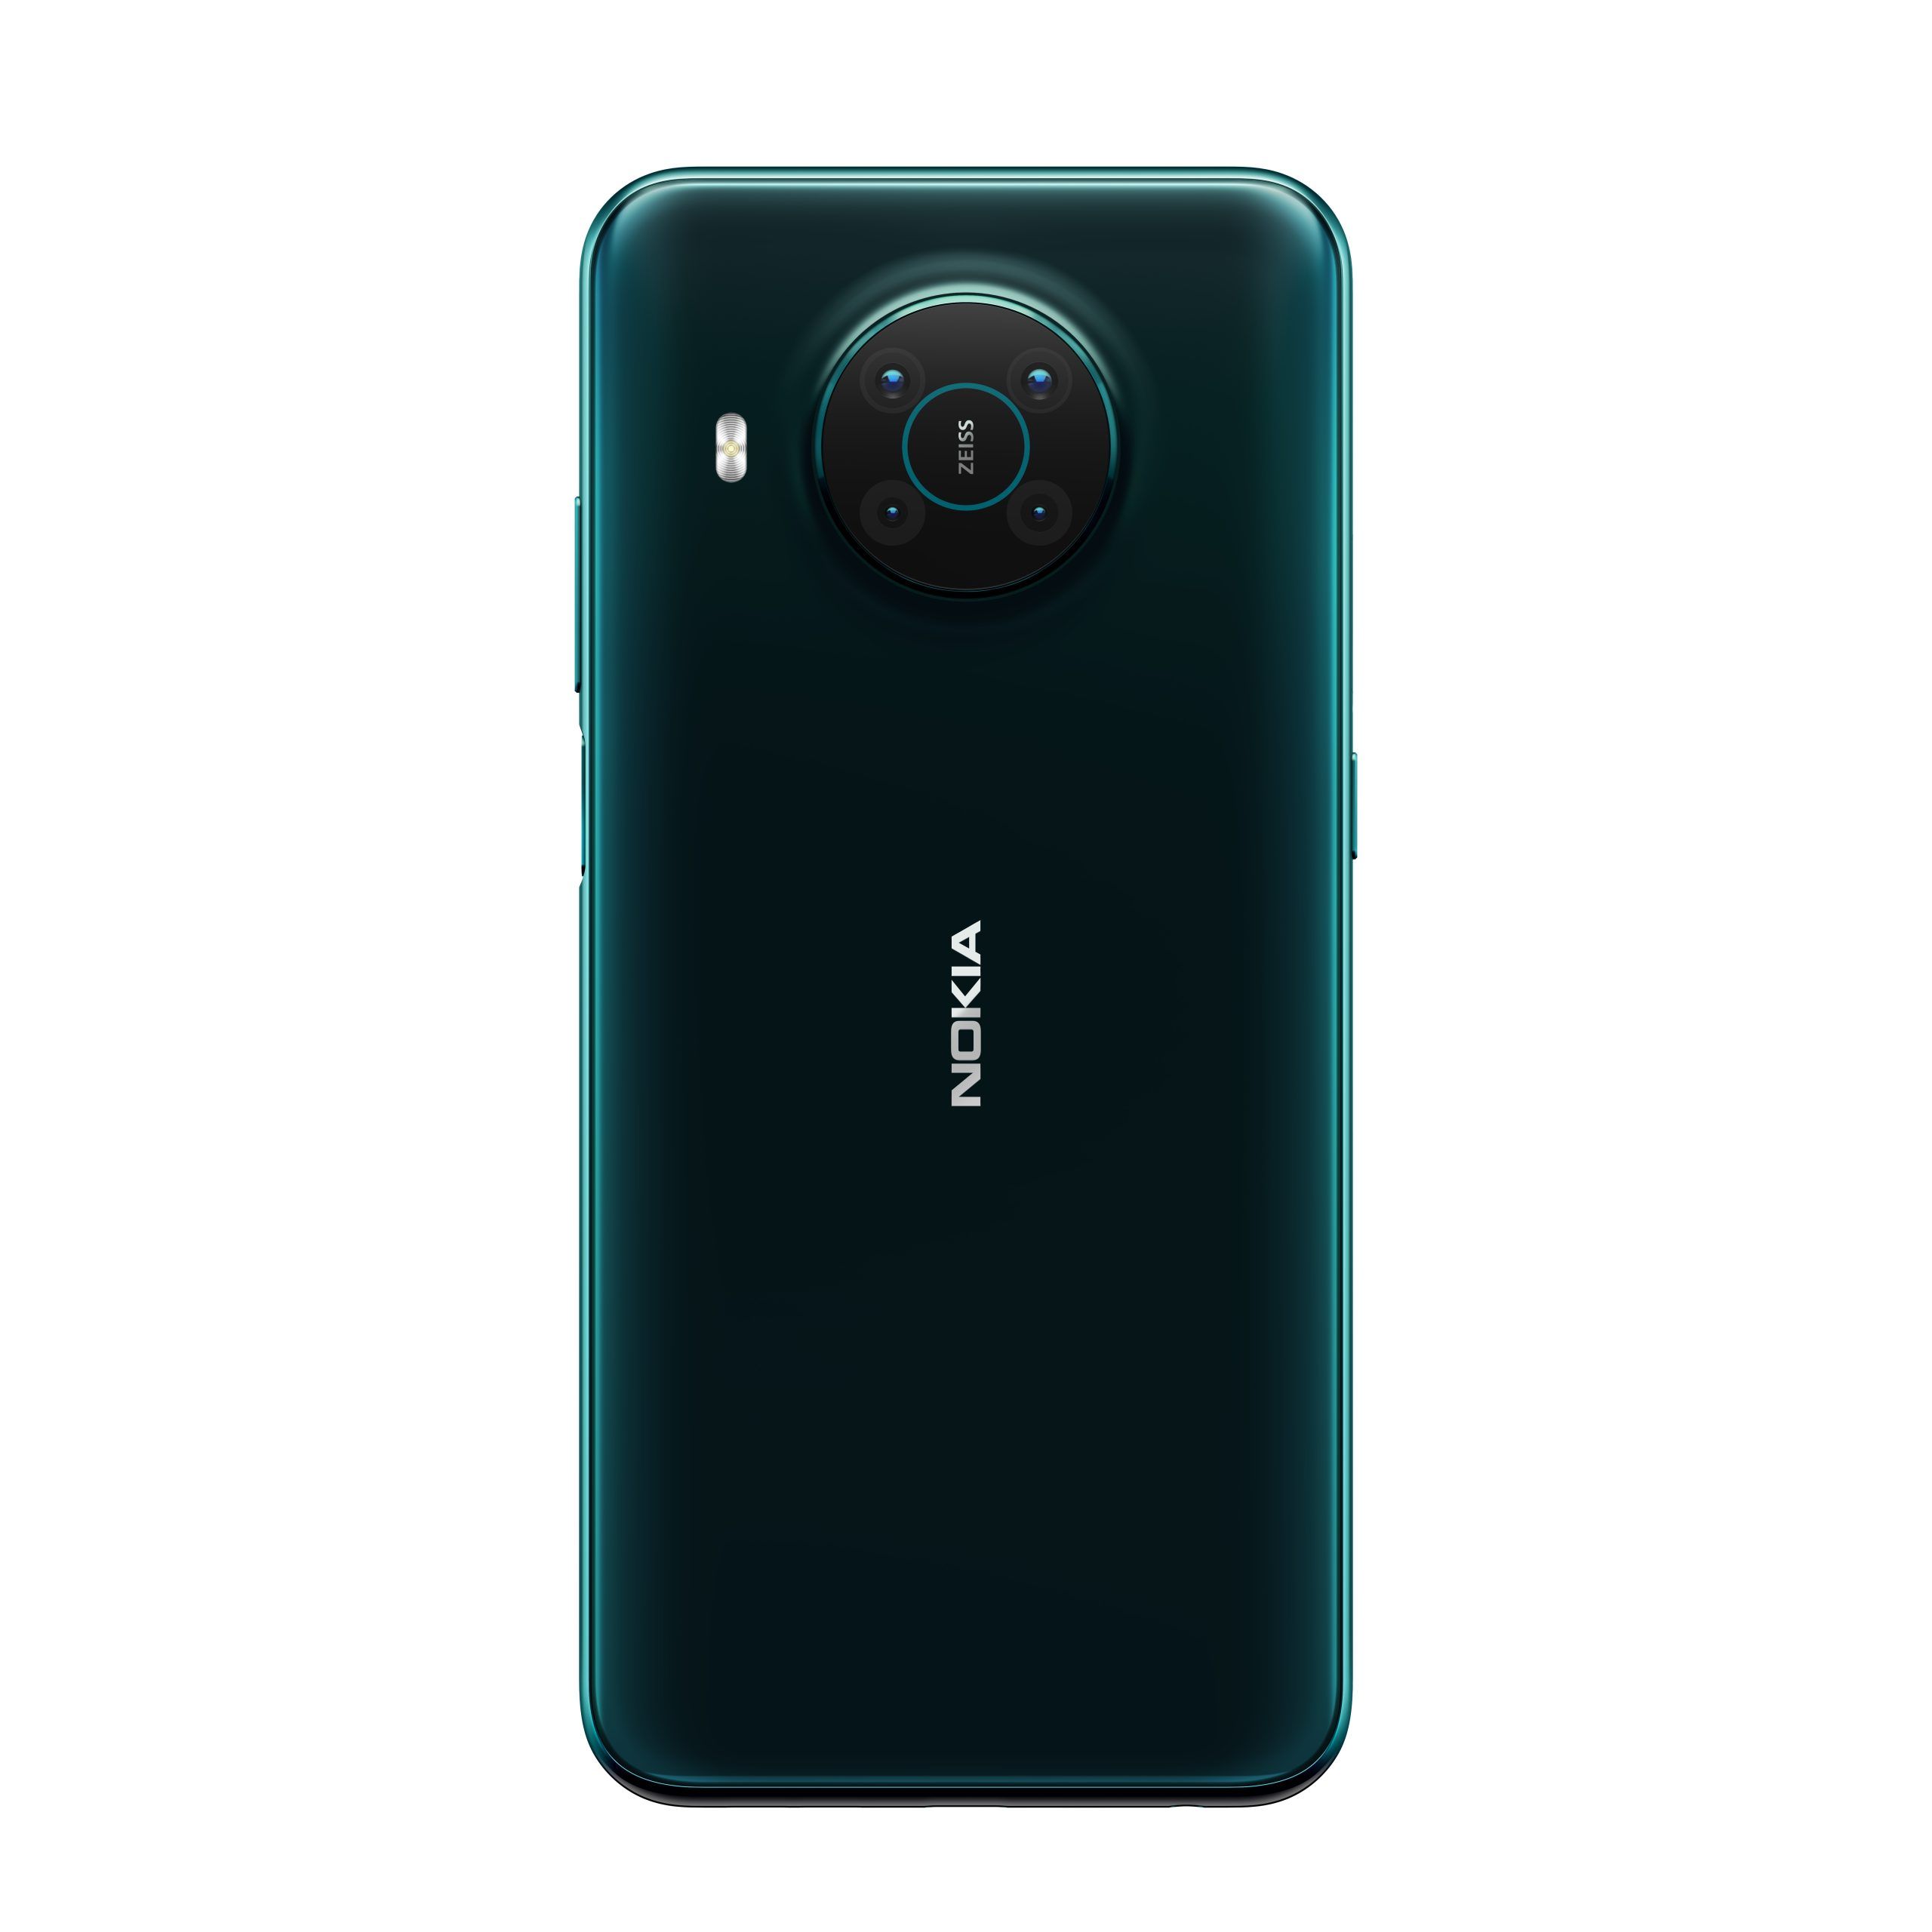 สเปค Nokia X10 5G มือถือสายคุ้มค่า ใช้งานได้ครอบคลุม มีราคาเพียง 5,999 บาทเท่านั้น